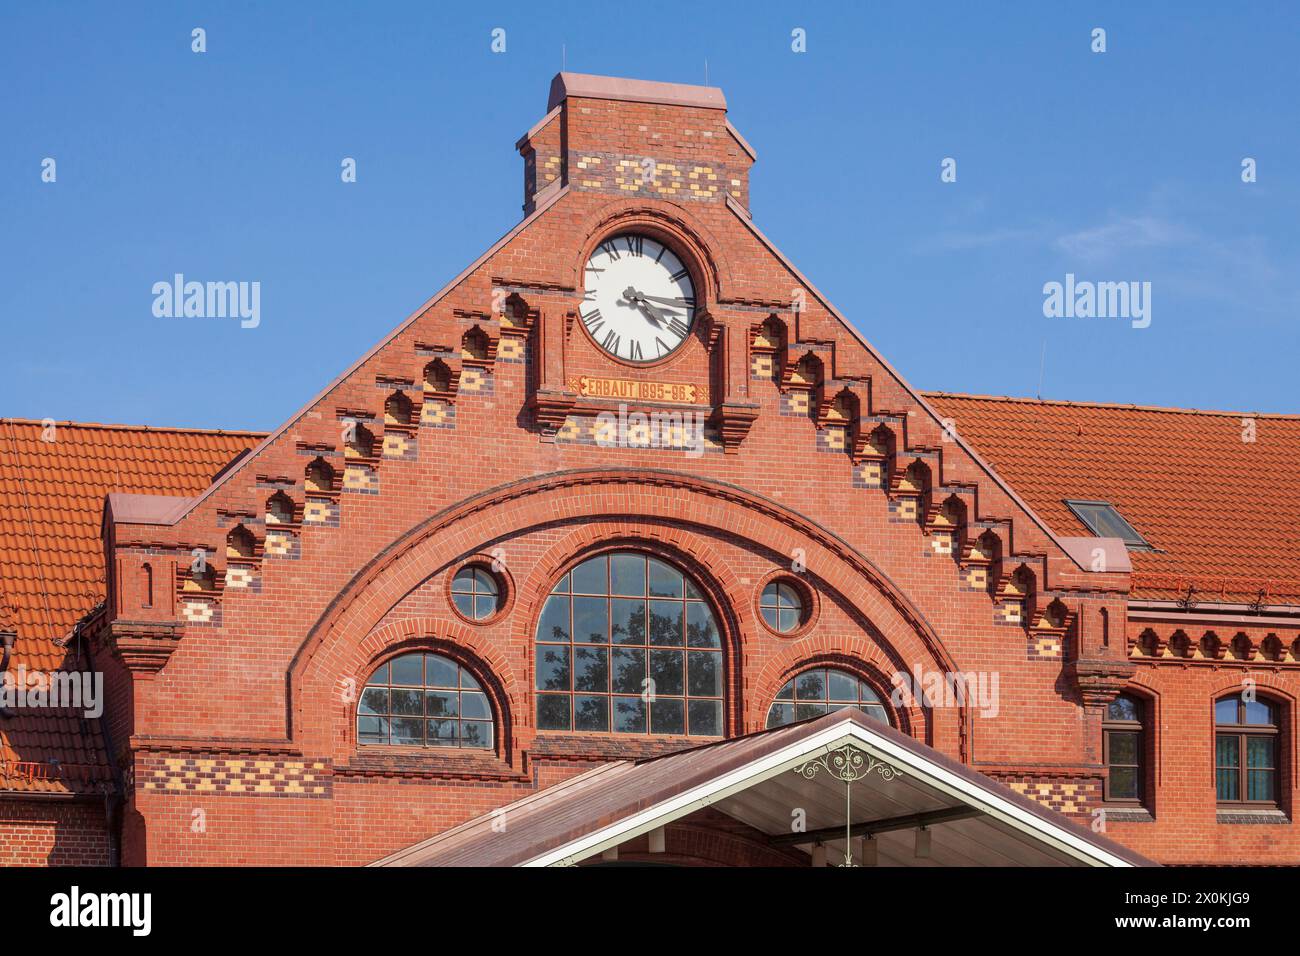 Stazione ferroviaria di Harburg, Harburg, Amburgo, Germania, Europa Foto Stock